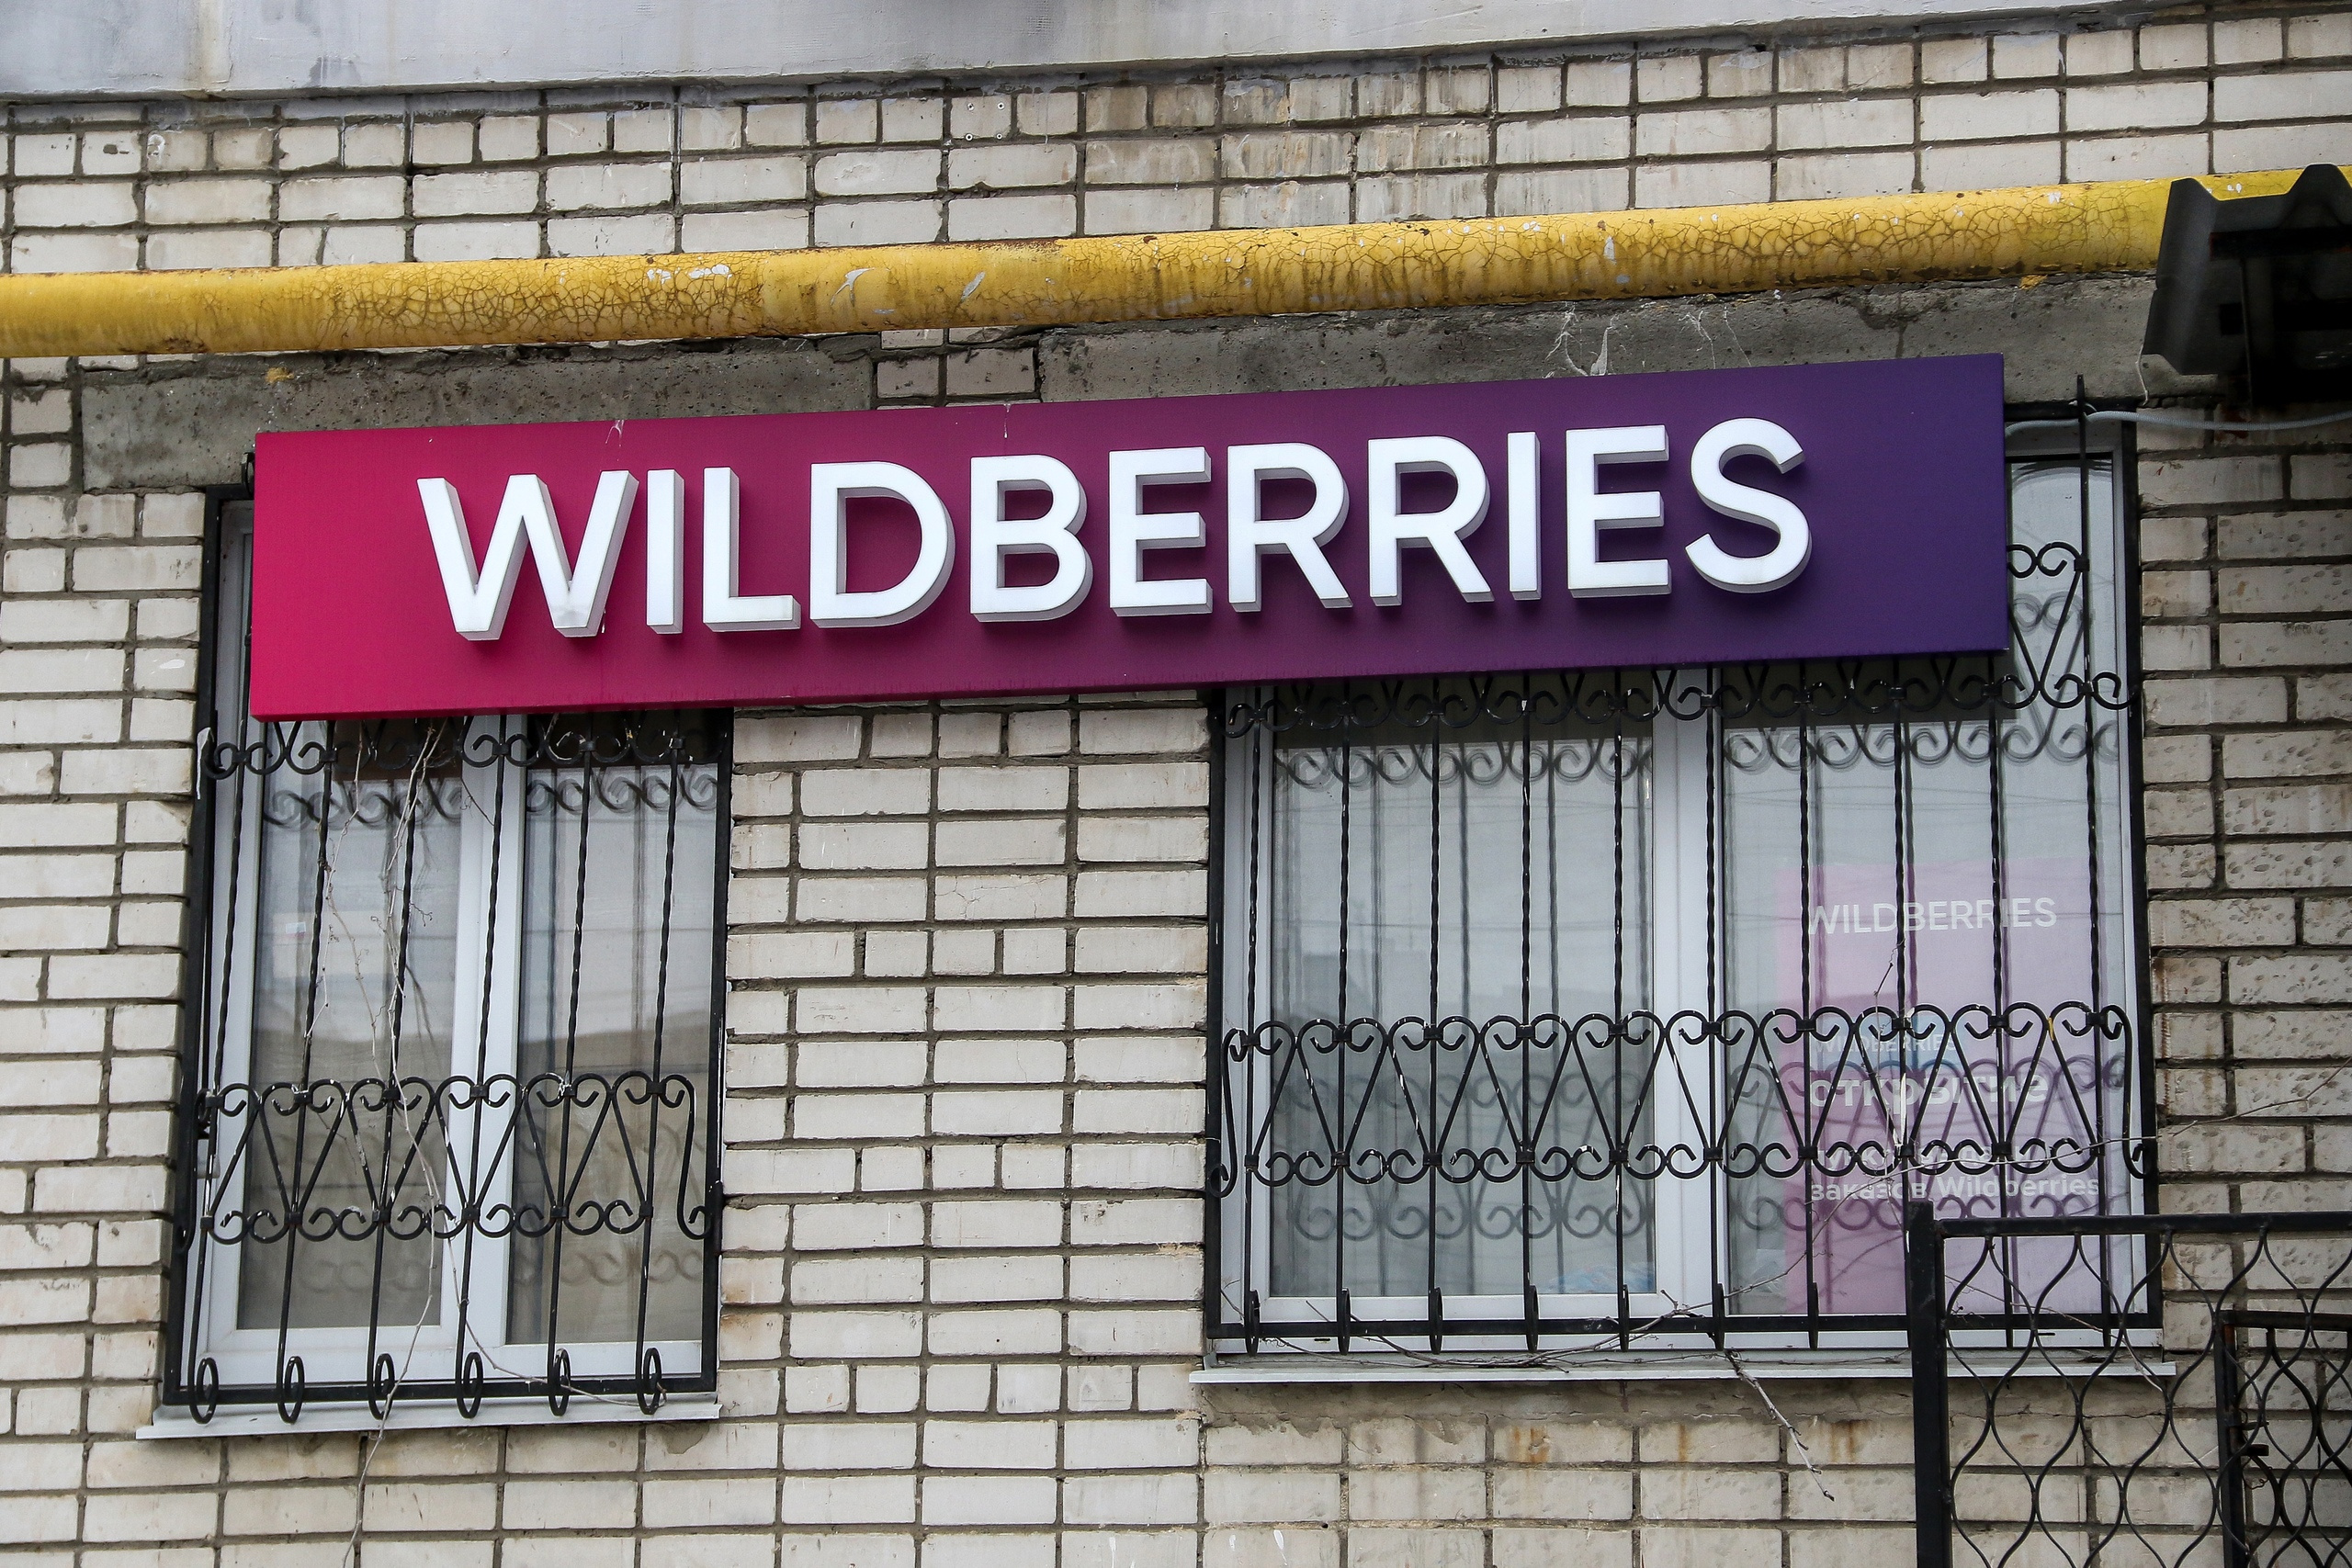 «Забастовка — чтобы компания увидела проблему». В Нижнем на фоне скандала с Wildberries продают пункты выдачи заказов